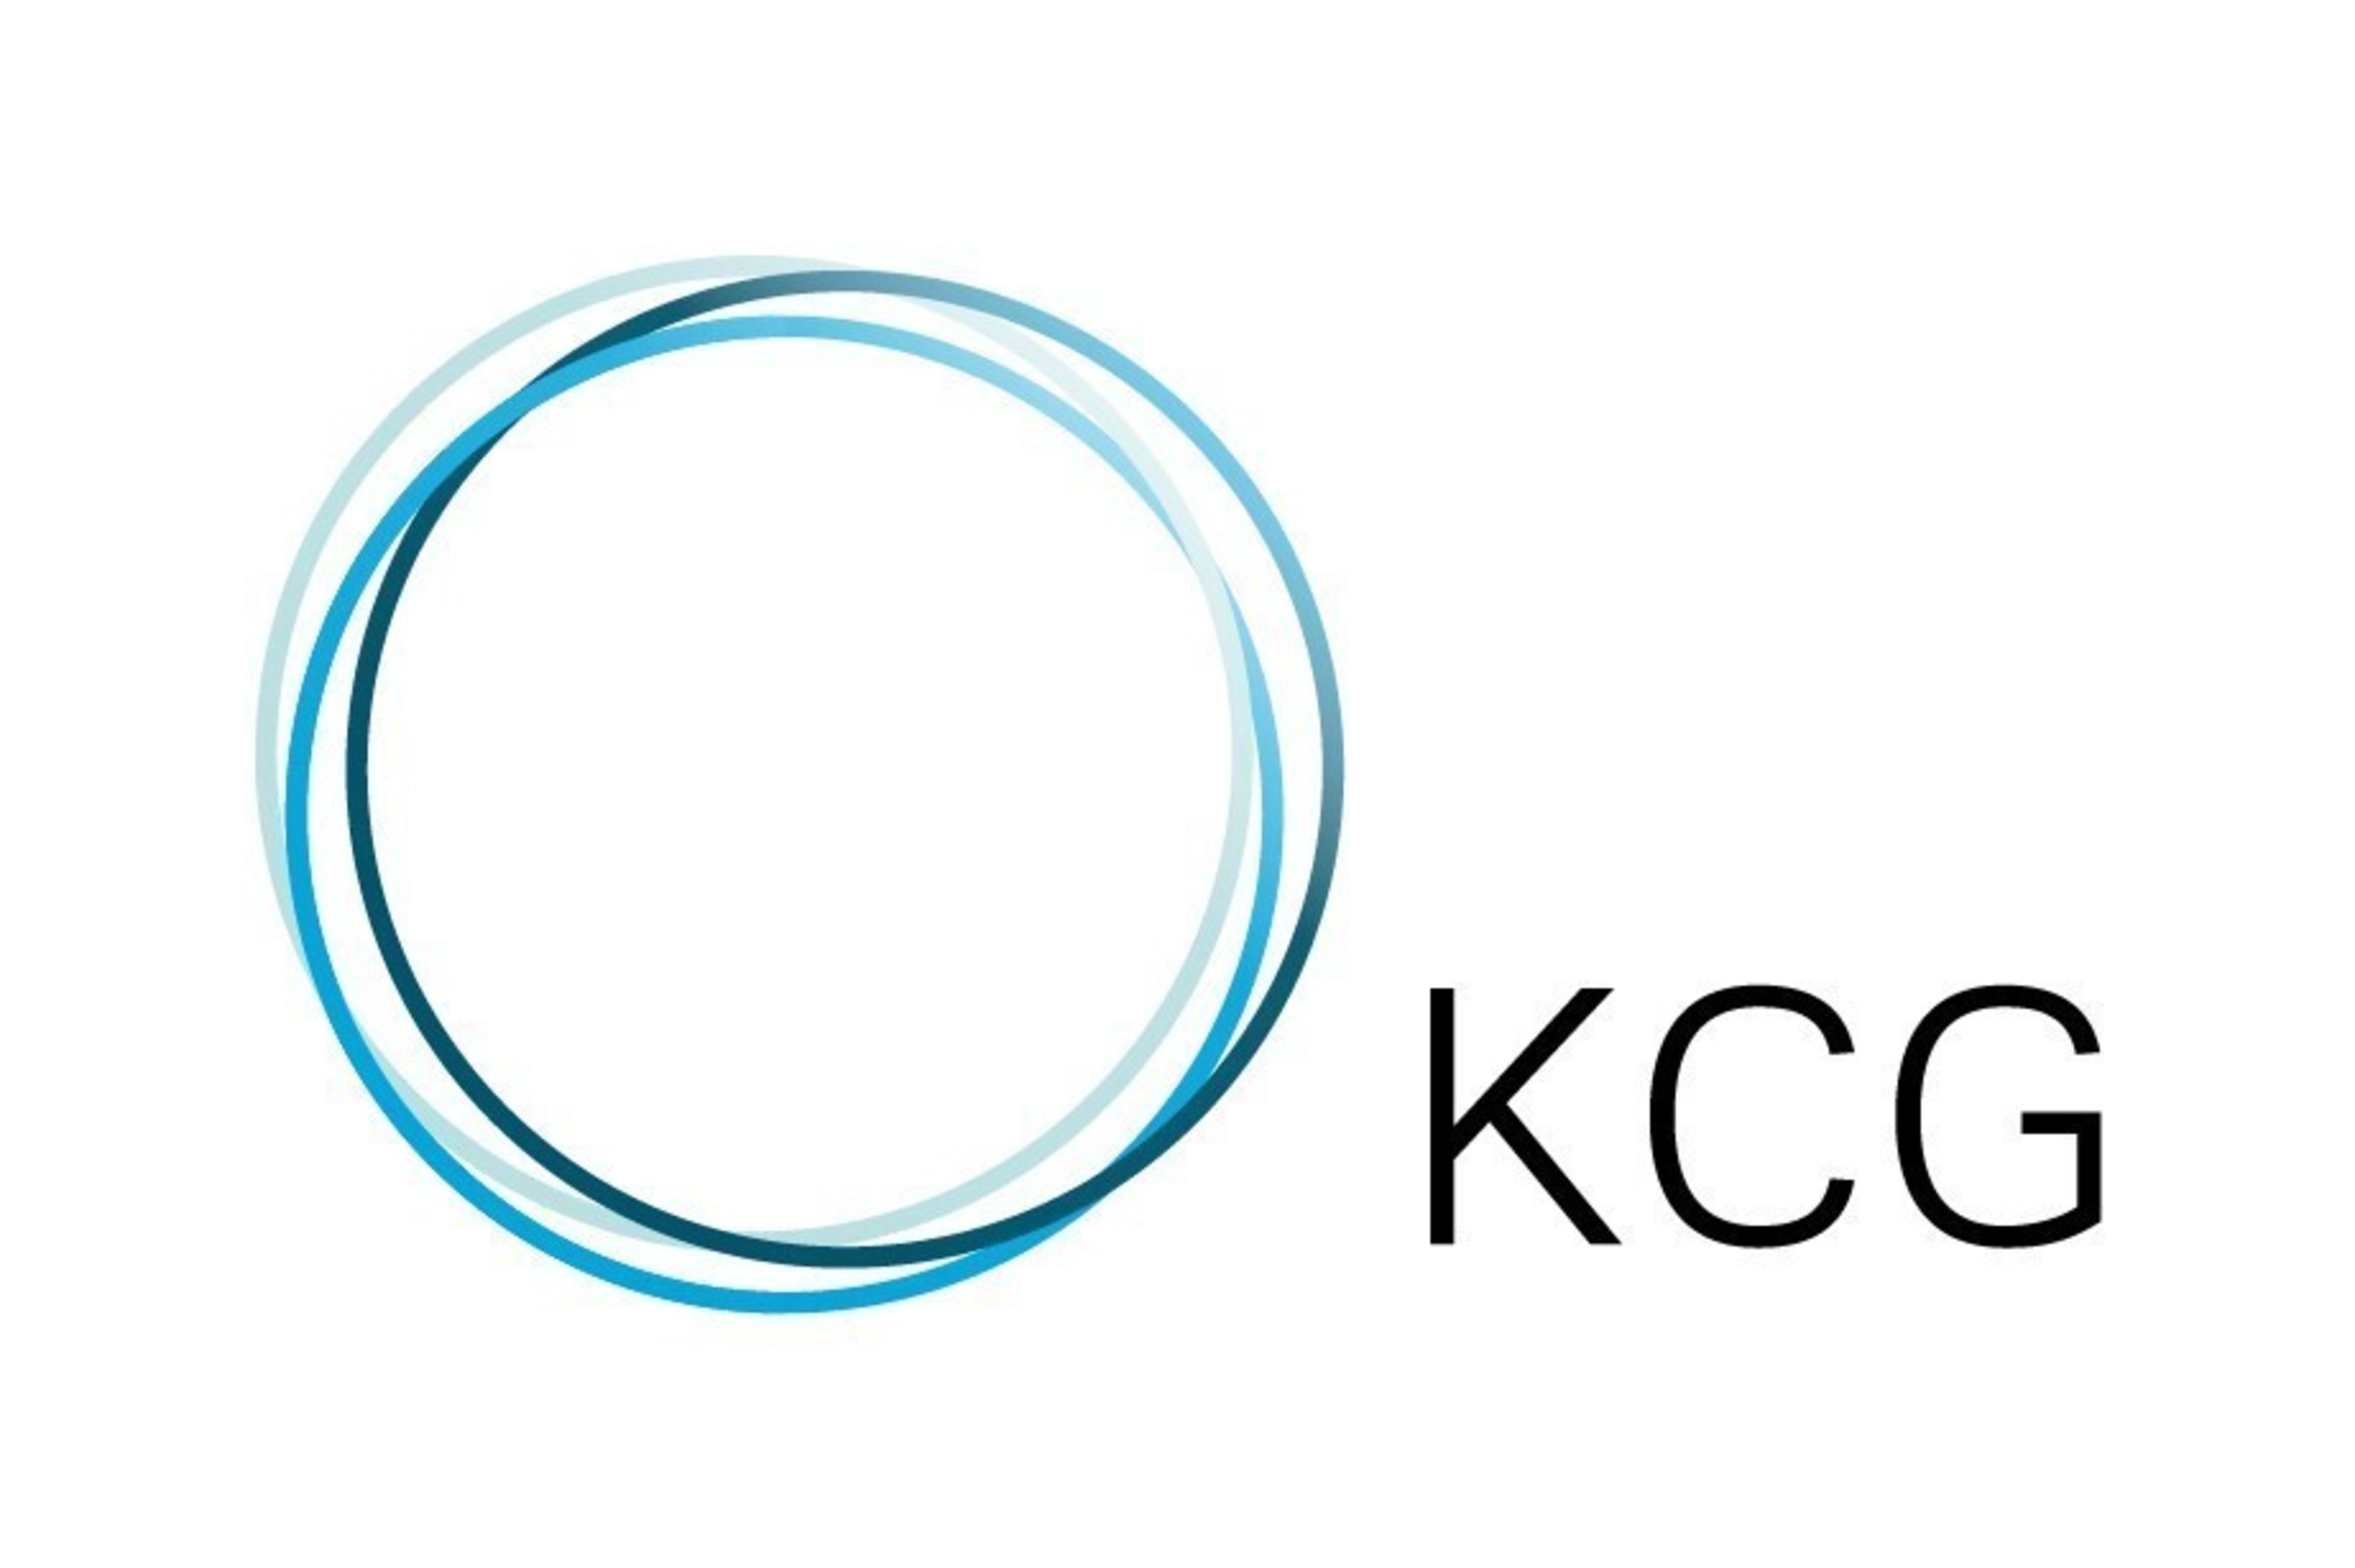 KCG Holdings, Inc.